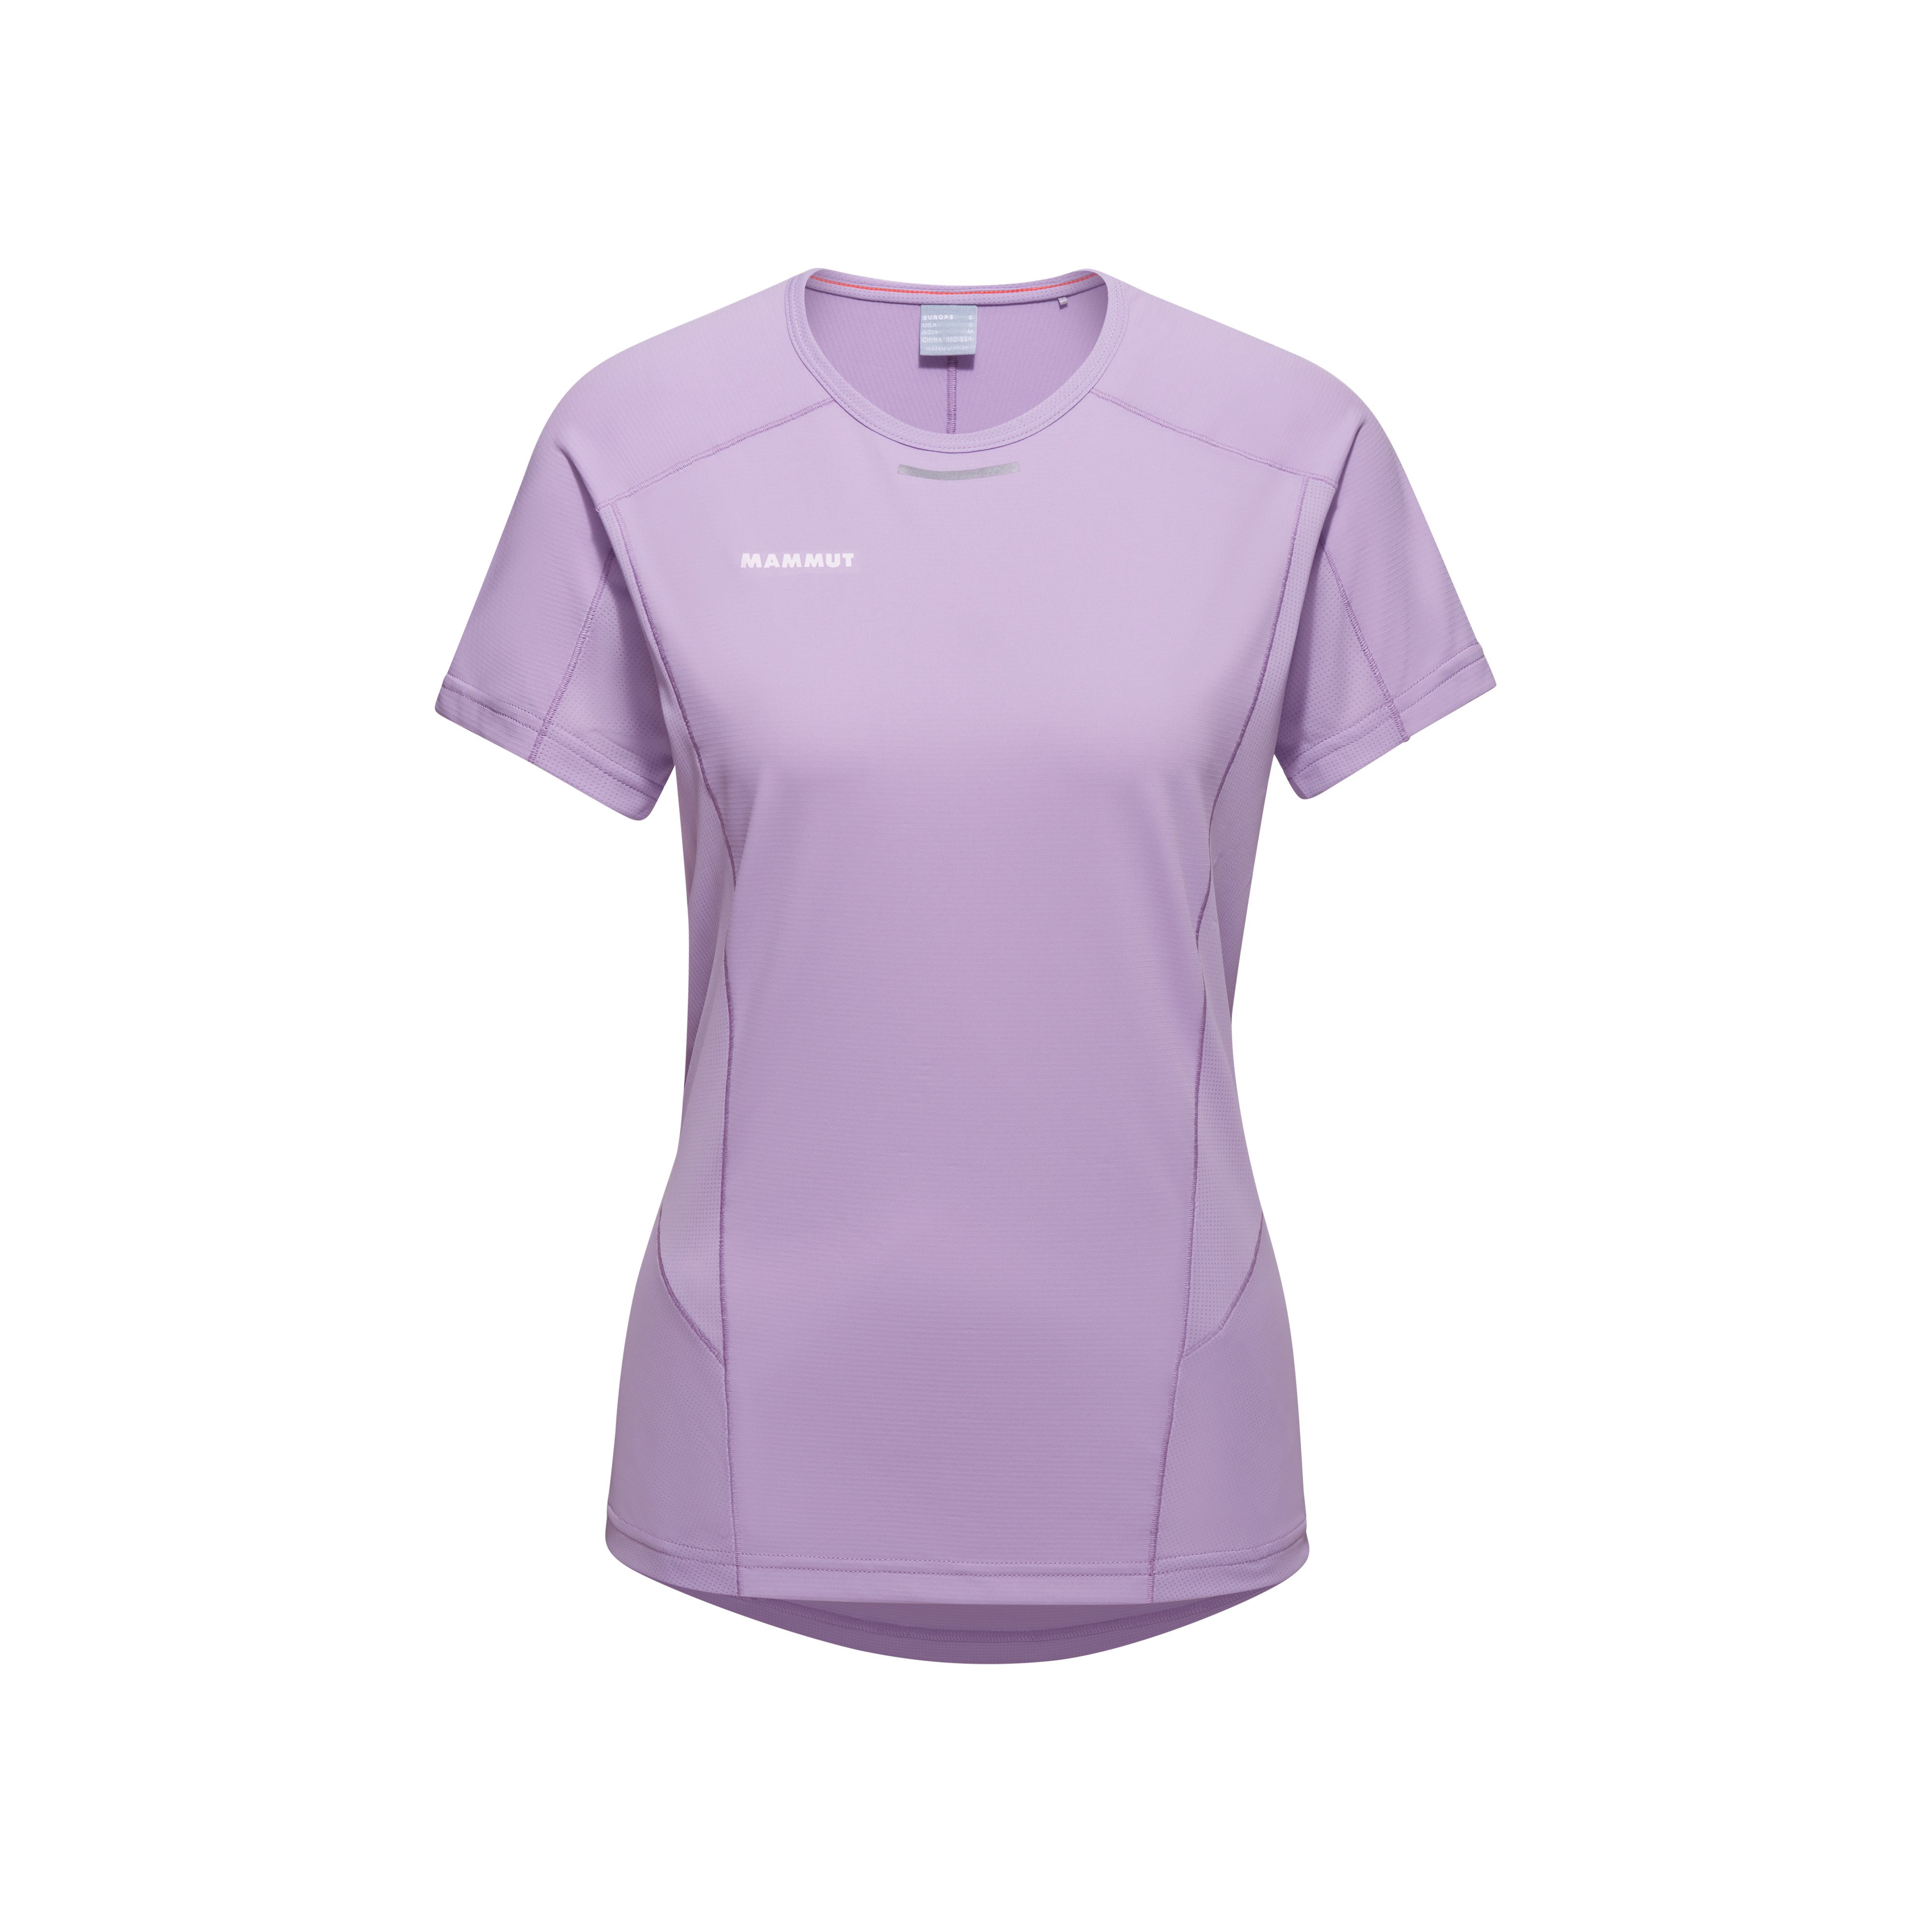 Aenergy FL T-Shirt Women - supernova, XL product image